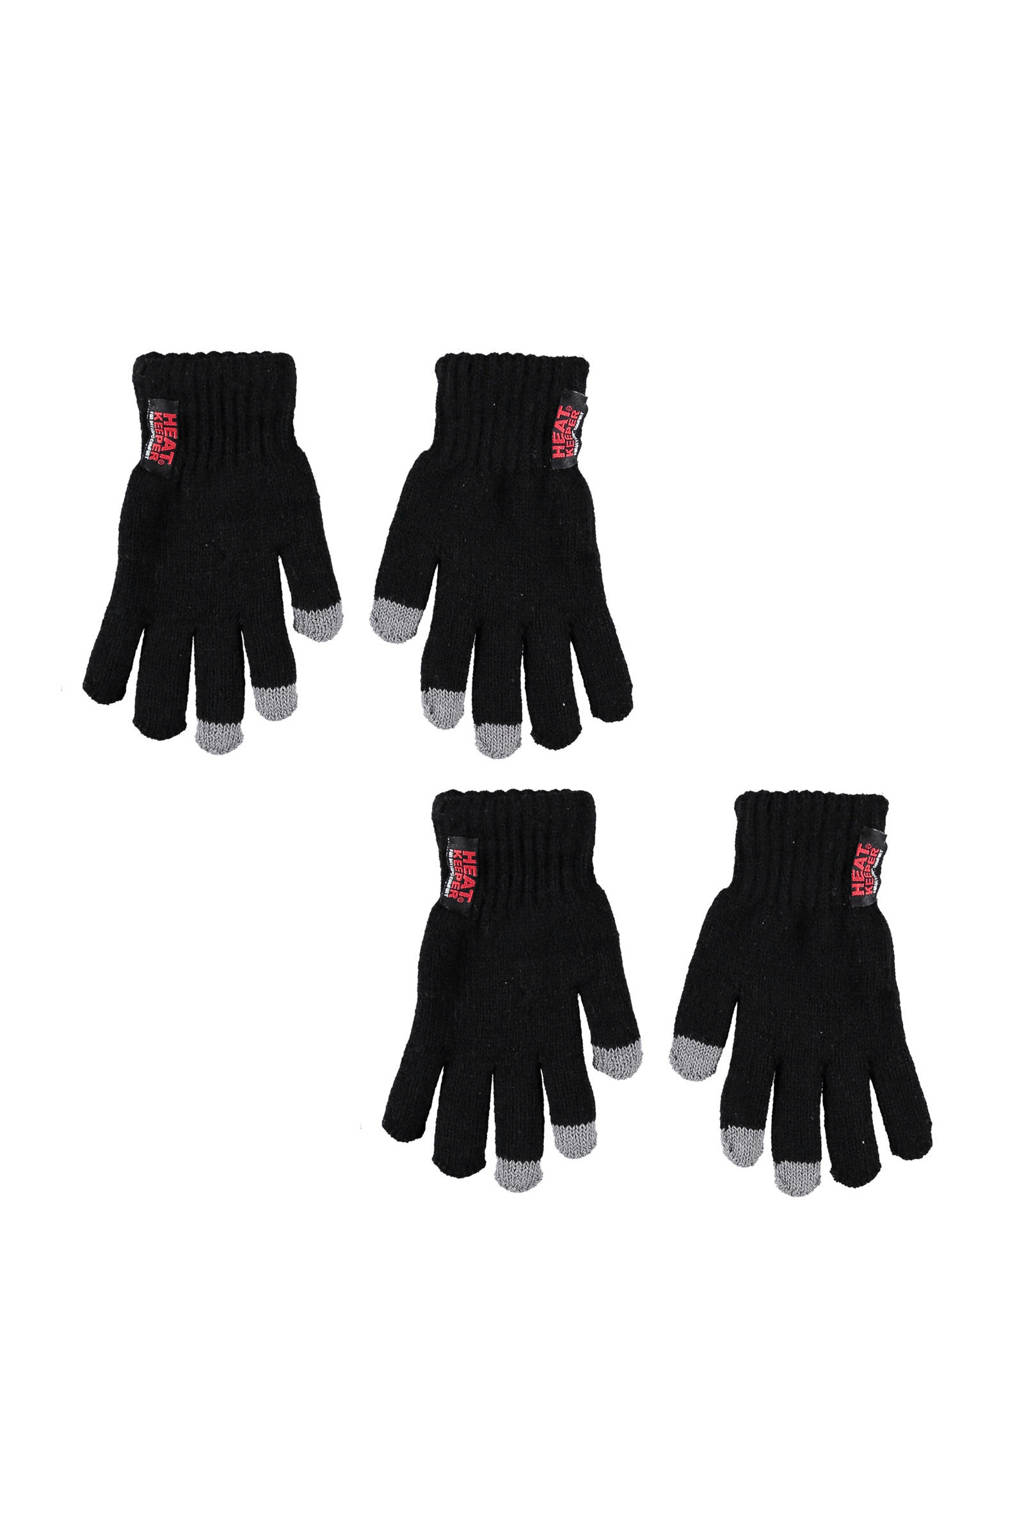 thermo handschoenen - set van 2 zwart